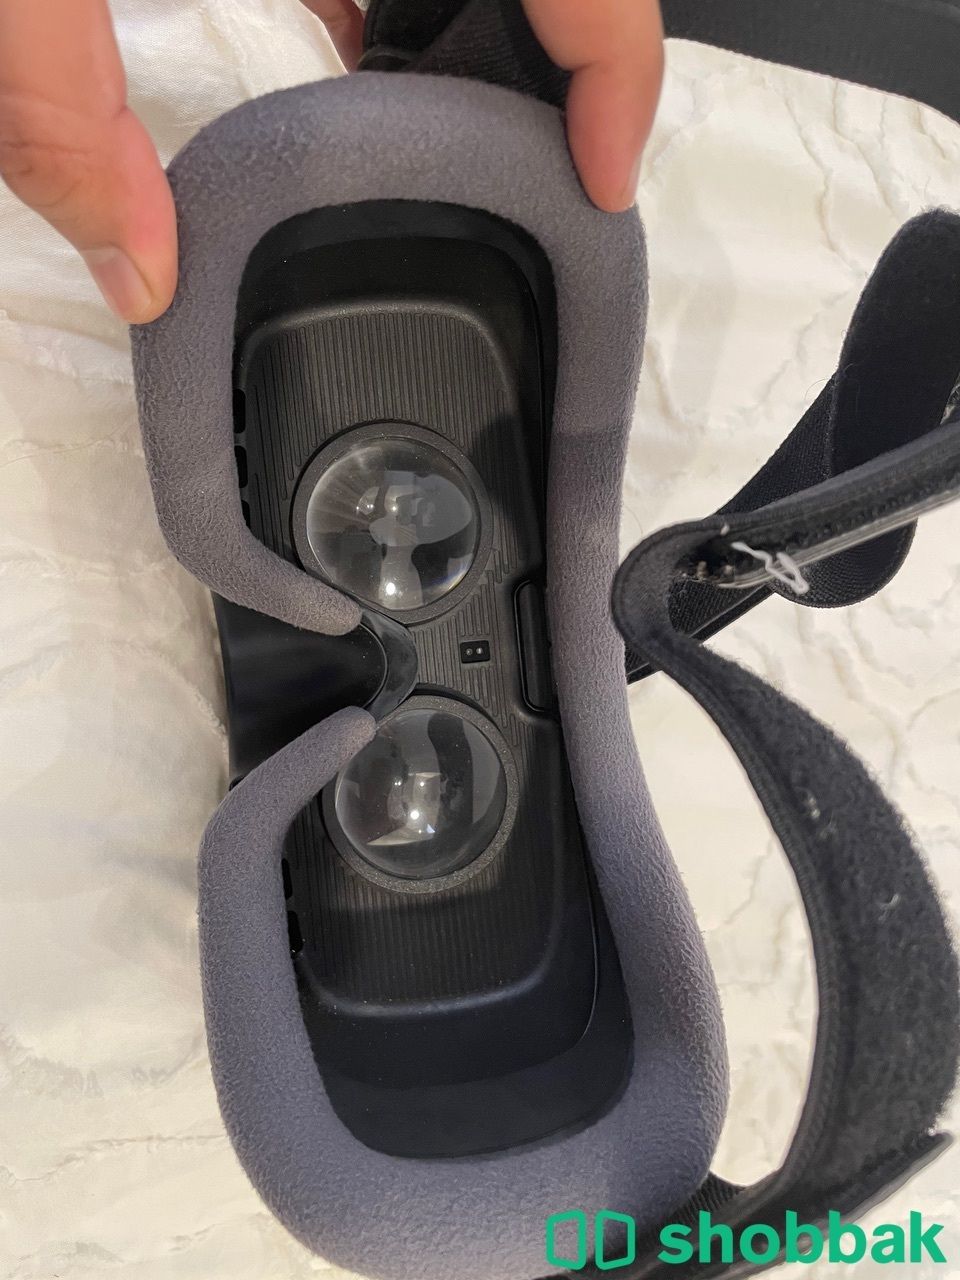 نظارة الواقع الافتراضي VR من شركة سامسونج samsung Shobbak Saudi Arabia